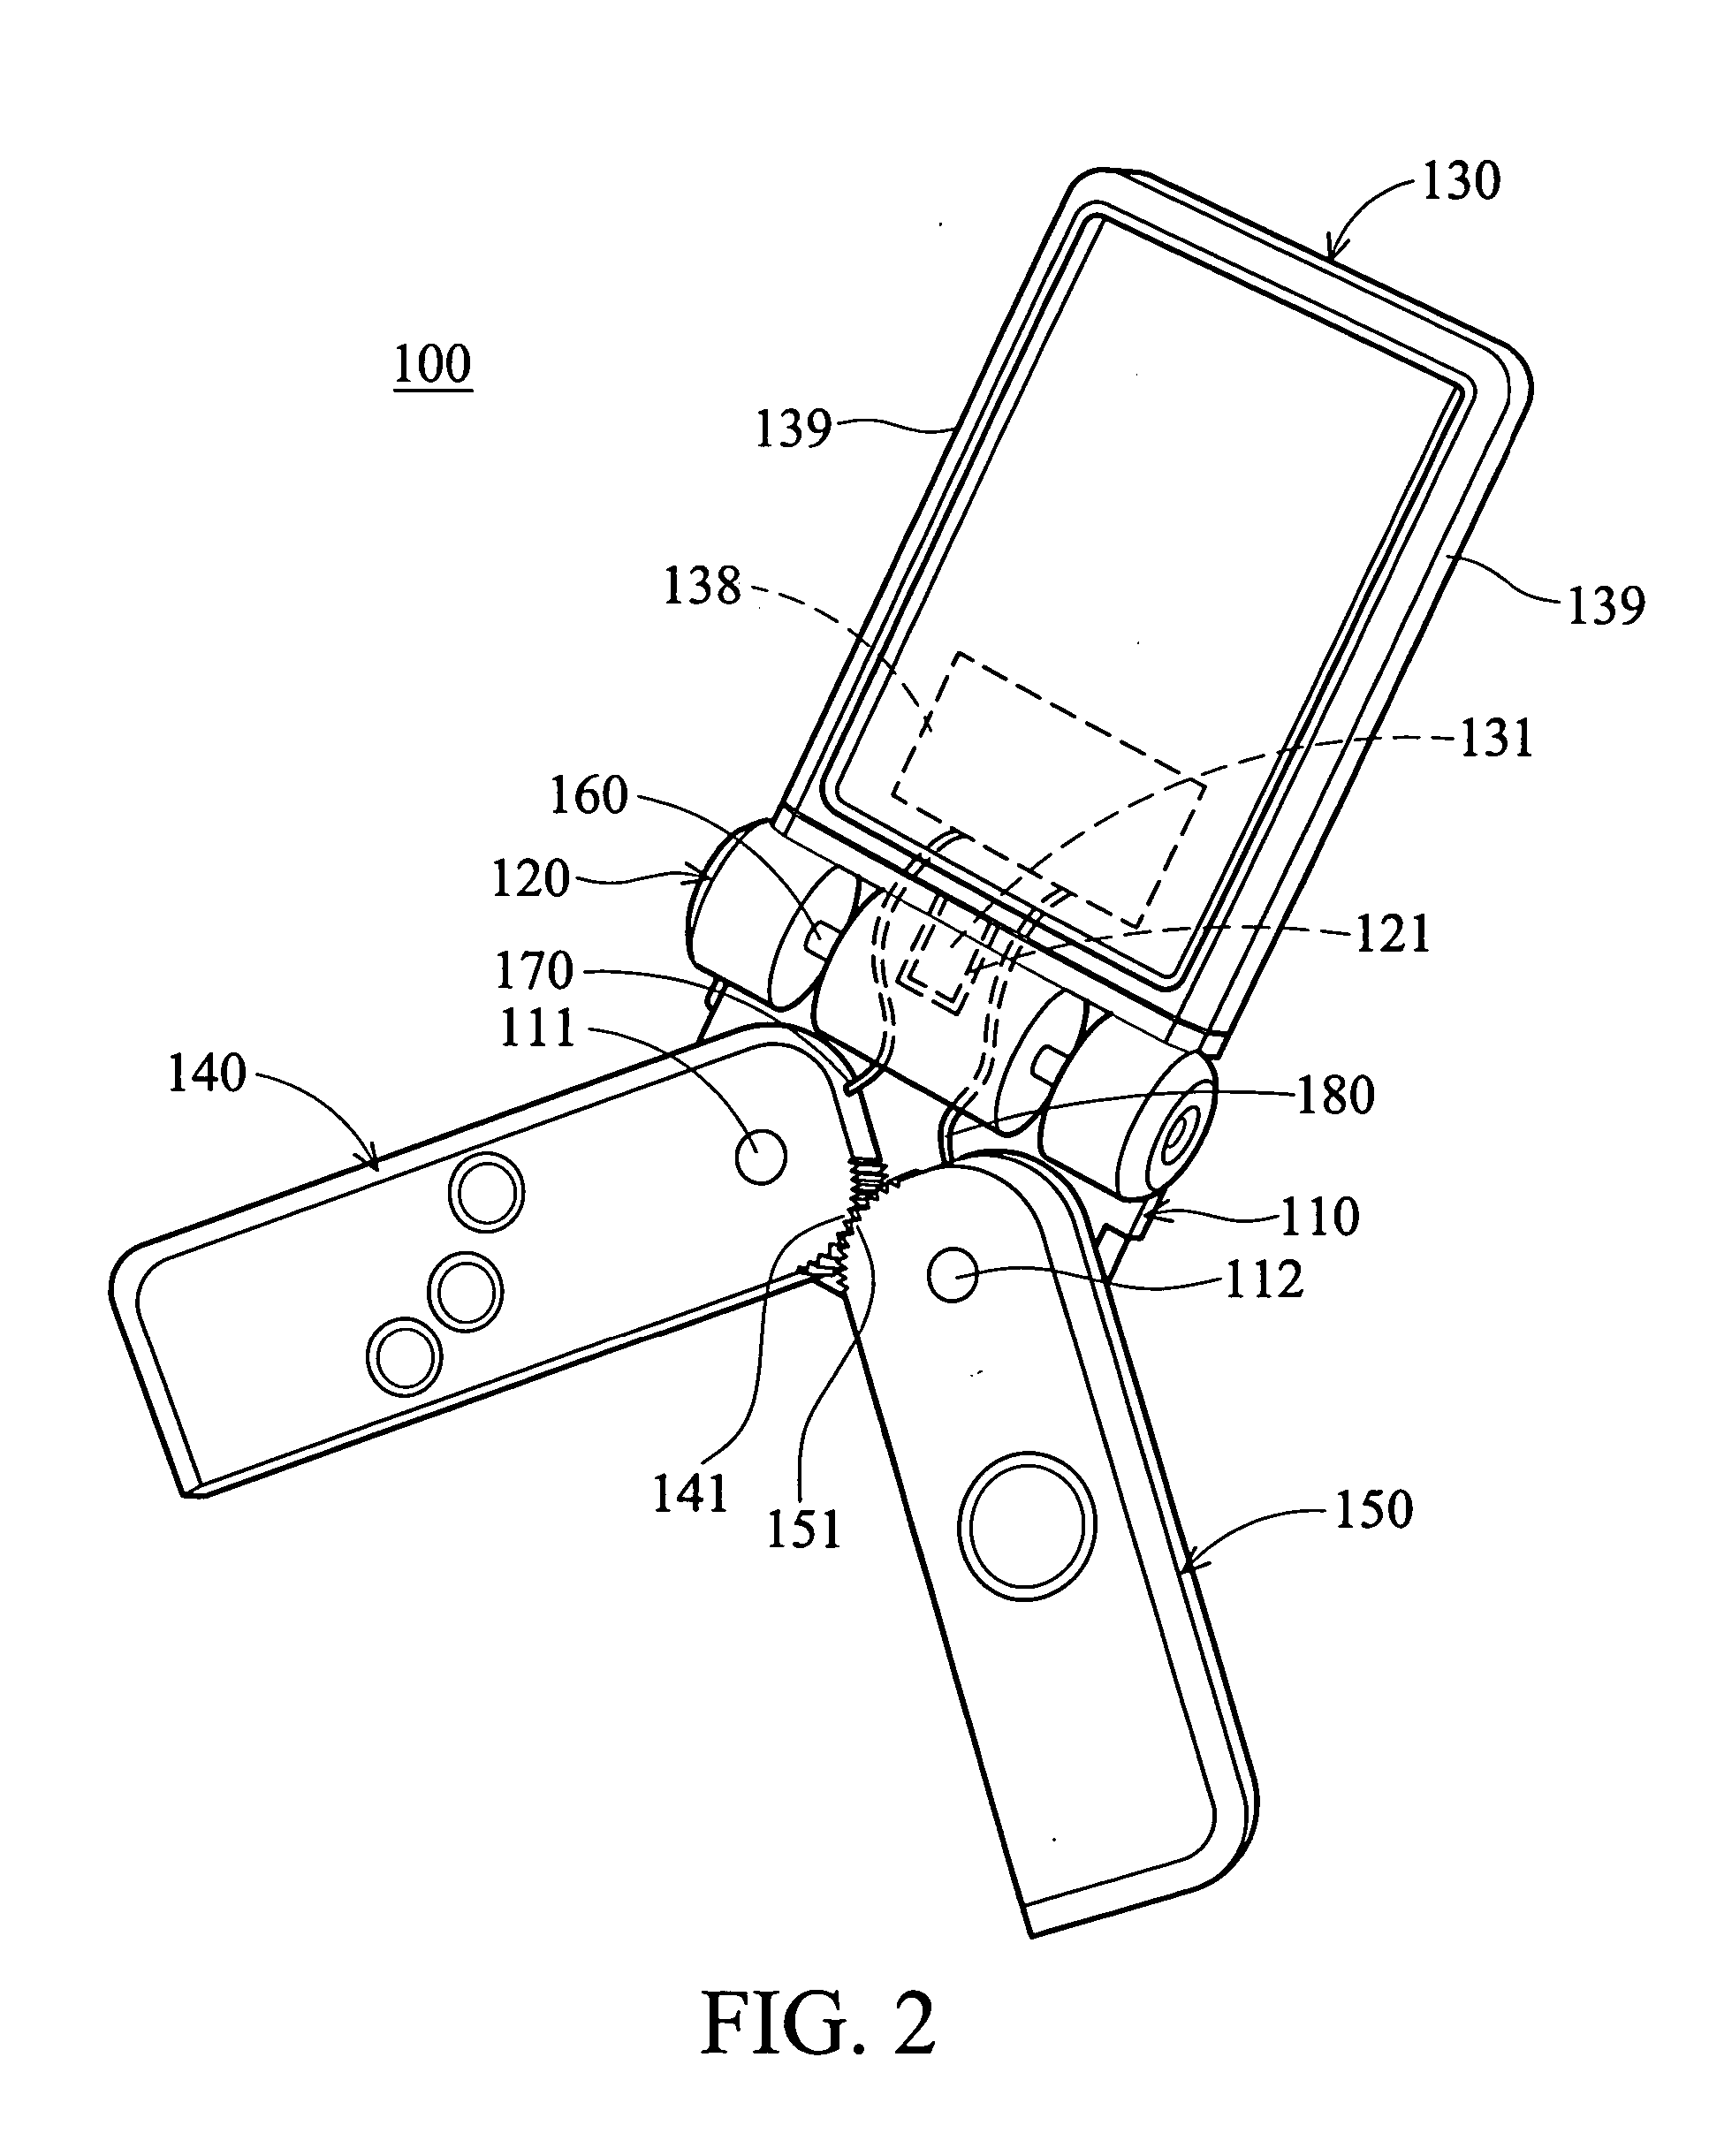 Handheld electronic apparatus